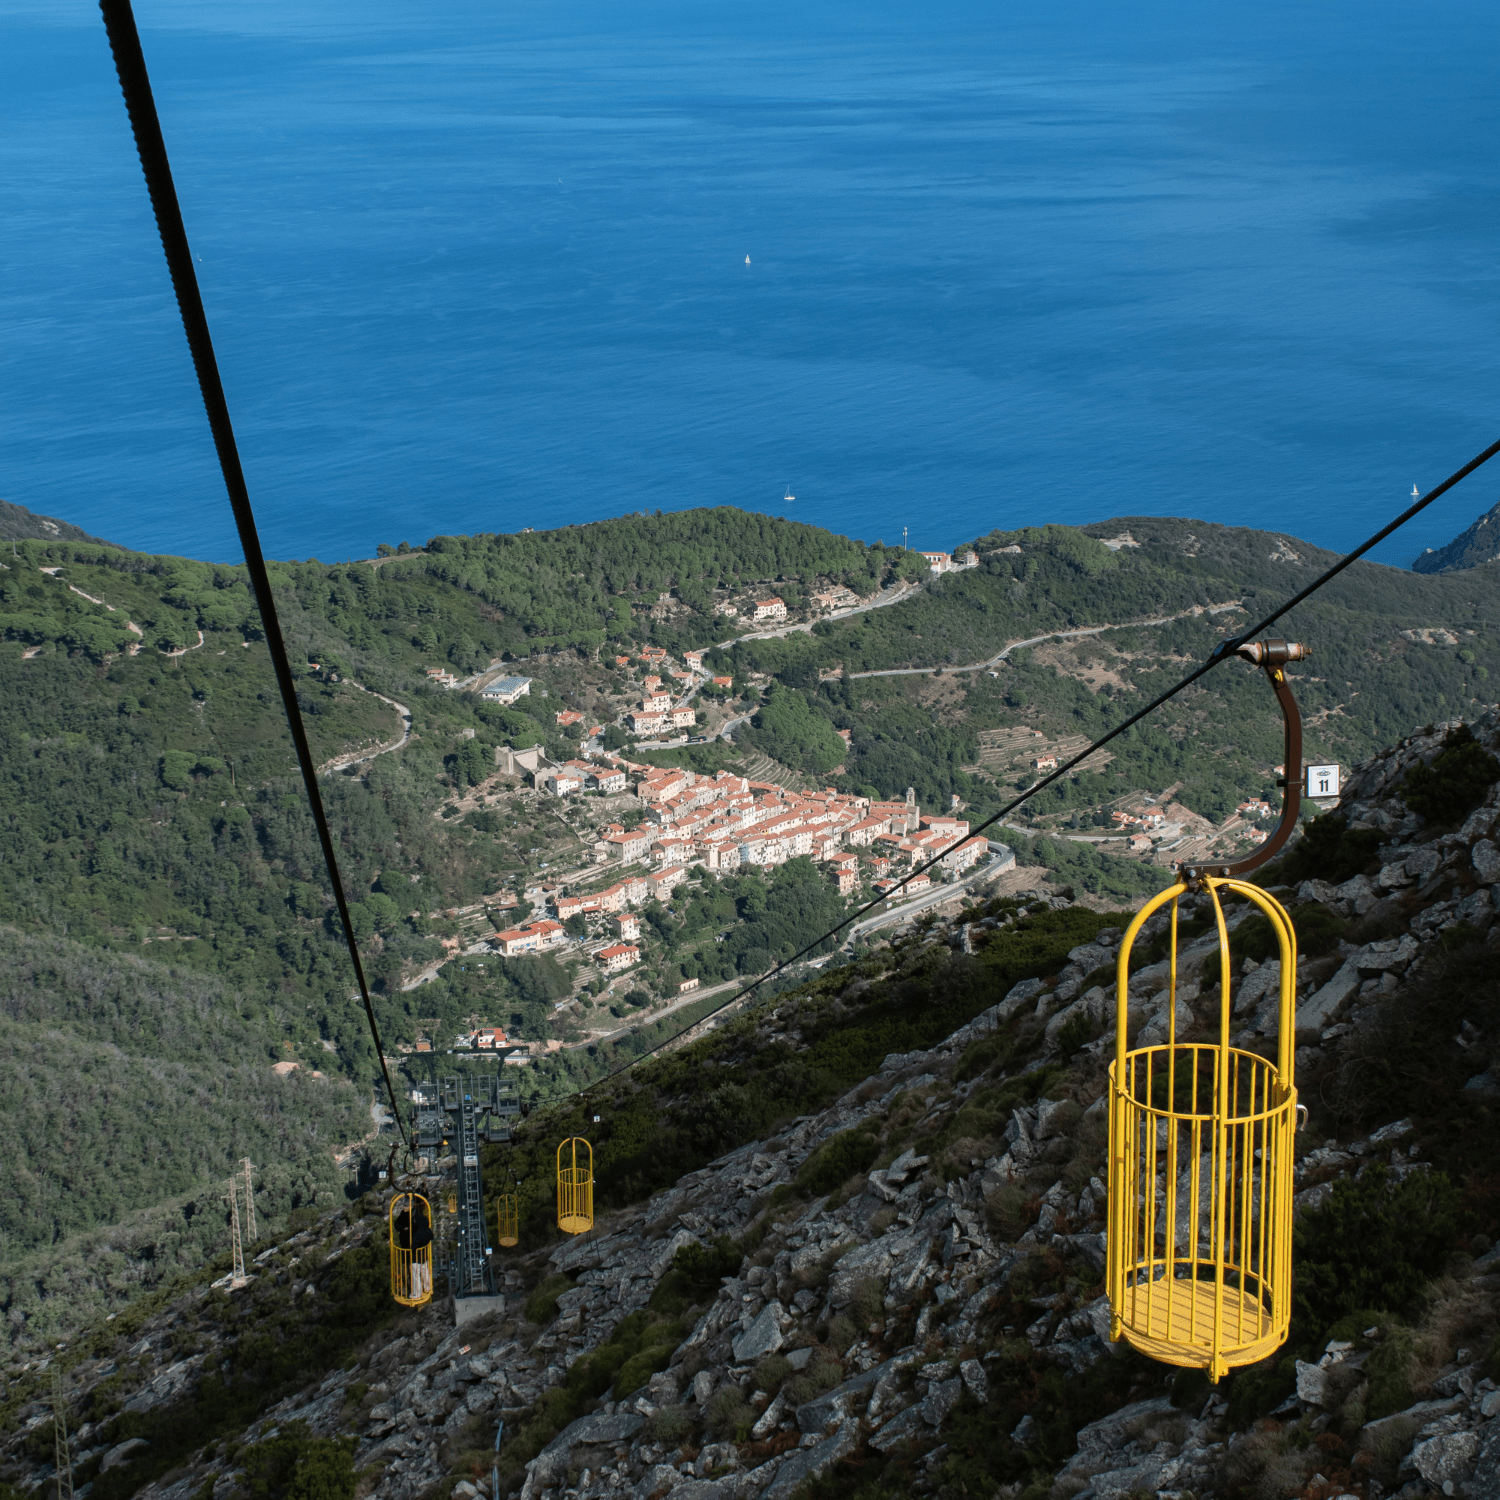 Mit der Seilbahn auf den höchsten Berg Elbas - den Monte Capanne - zu fahren, ist ein echtes Erlebnis.